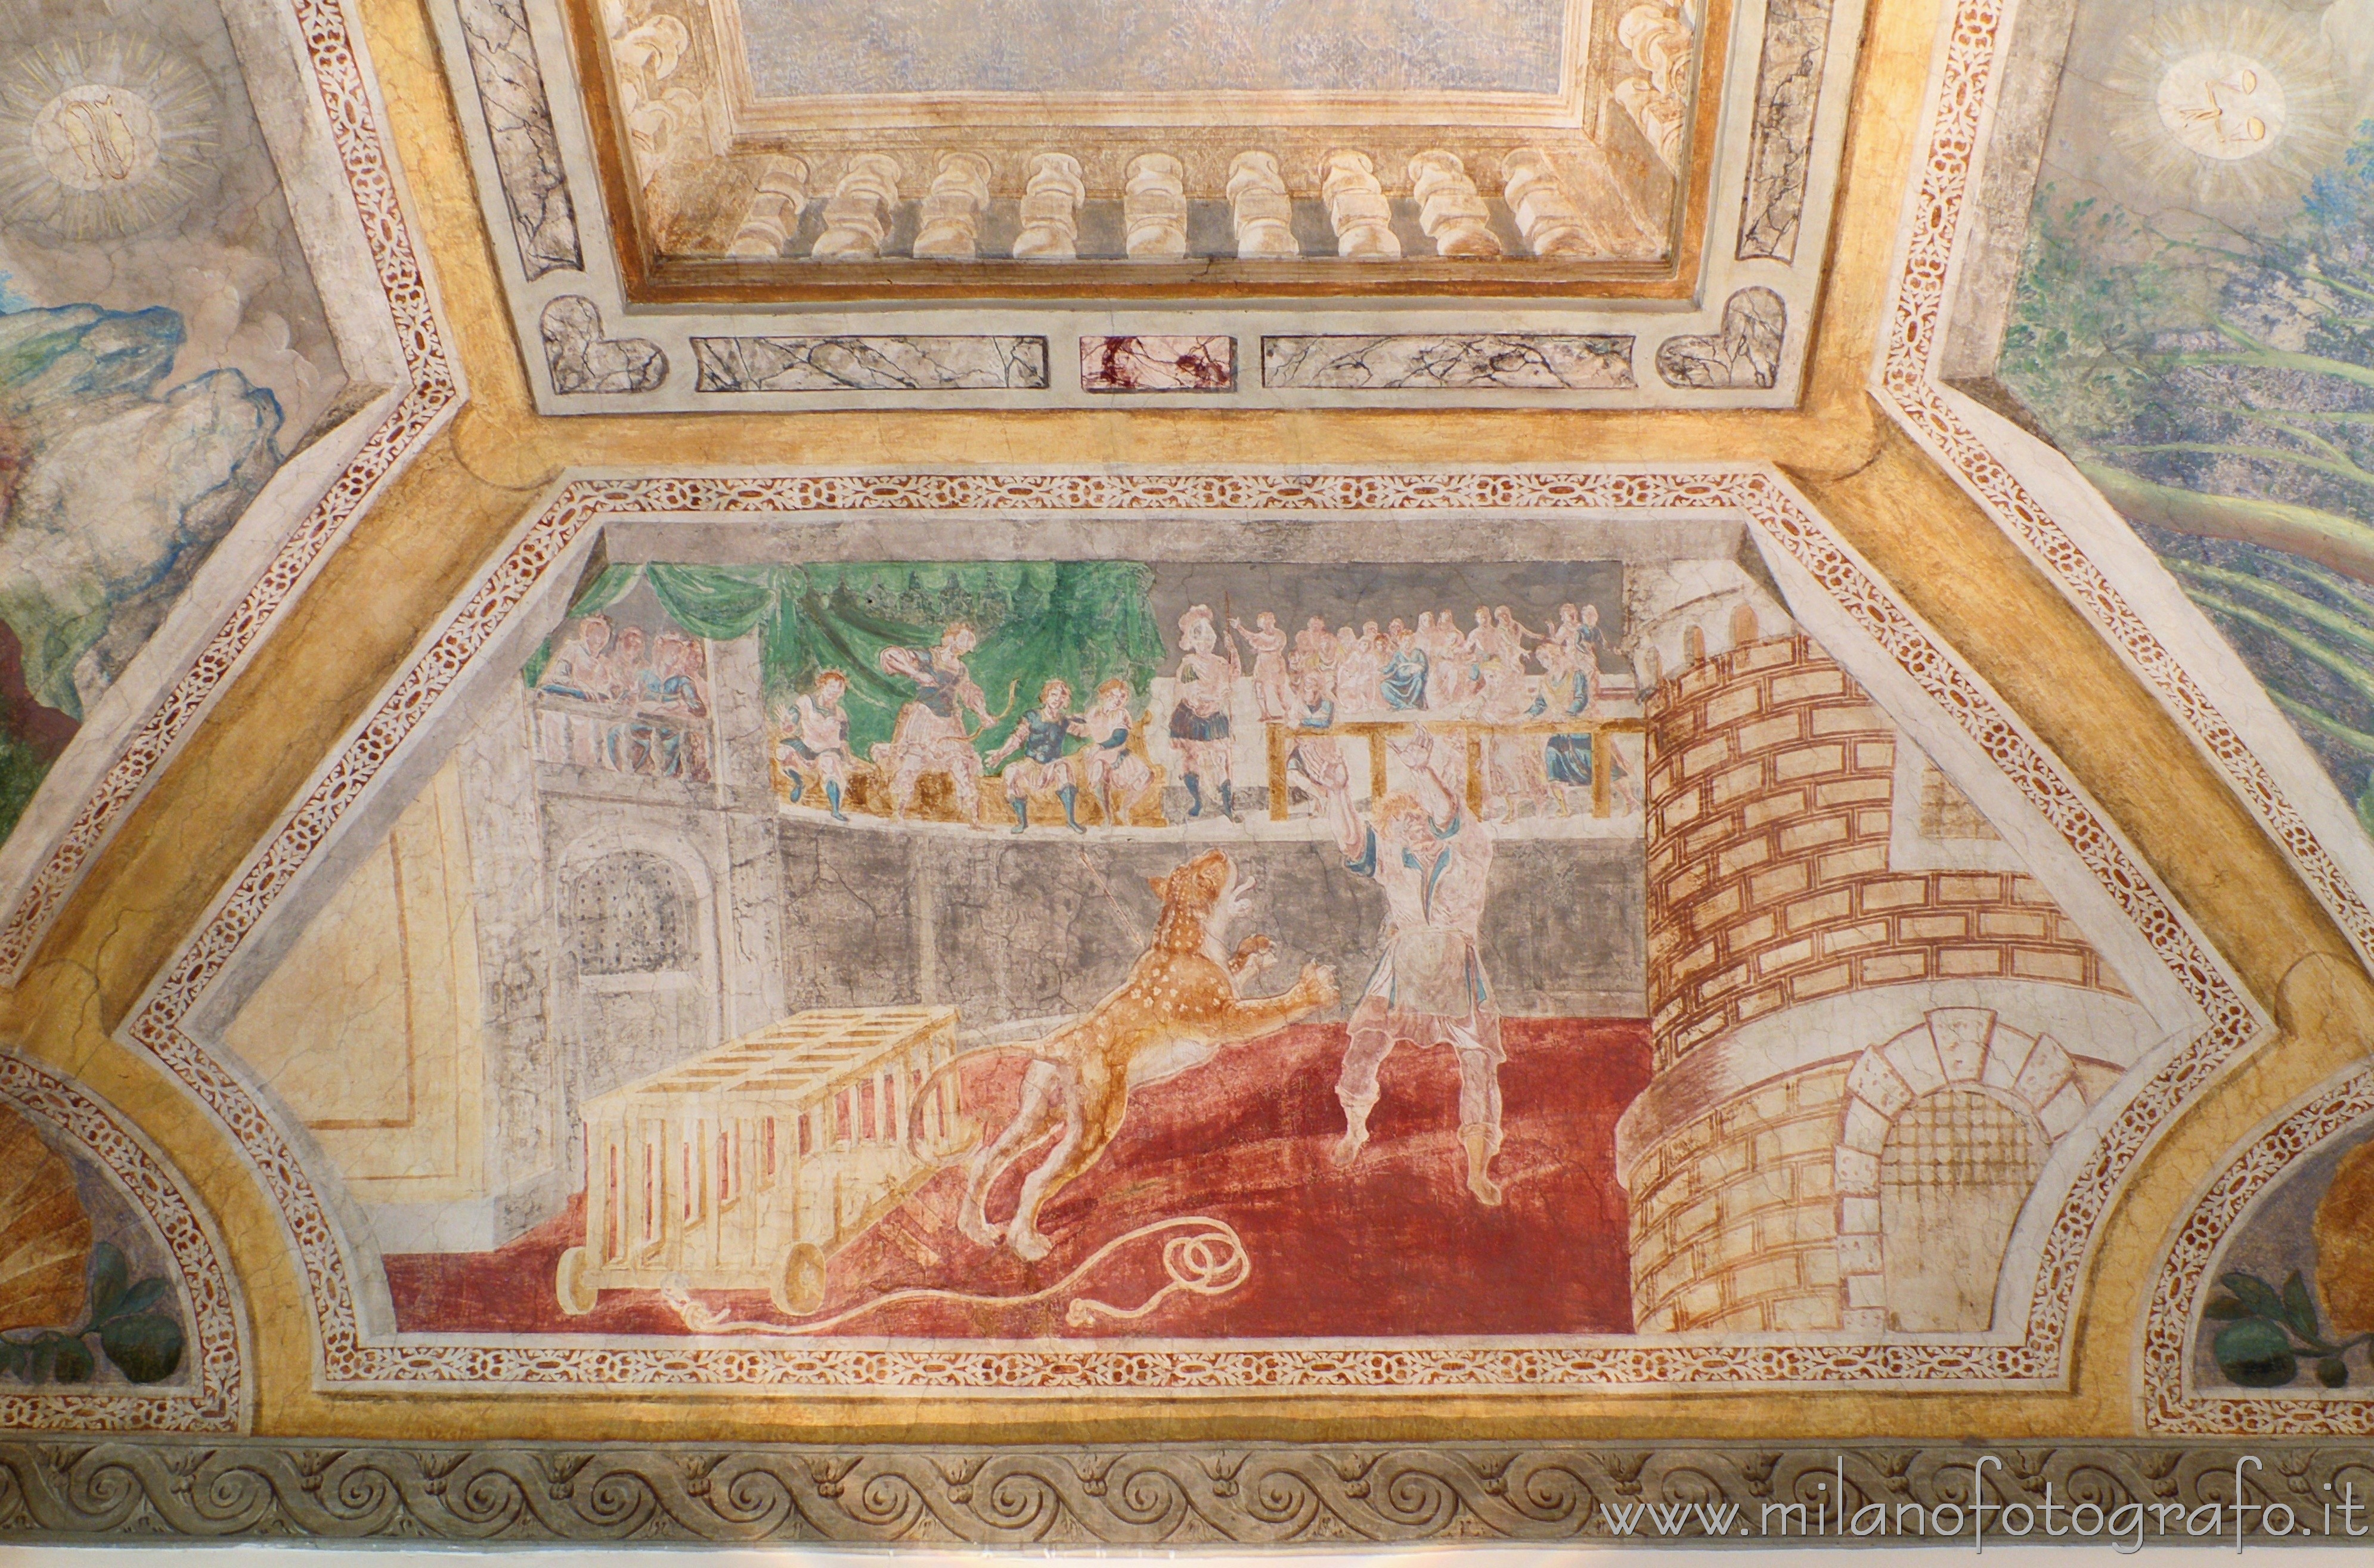 Cavenago di Brianza (Monza e Brianza, Italy): Frescoes on one side of the ceiling of the Zodiac Hall in Palace Rasini - Cavenago di Brianza (Monza e Brianza, Italy)